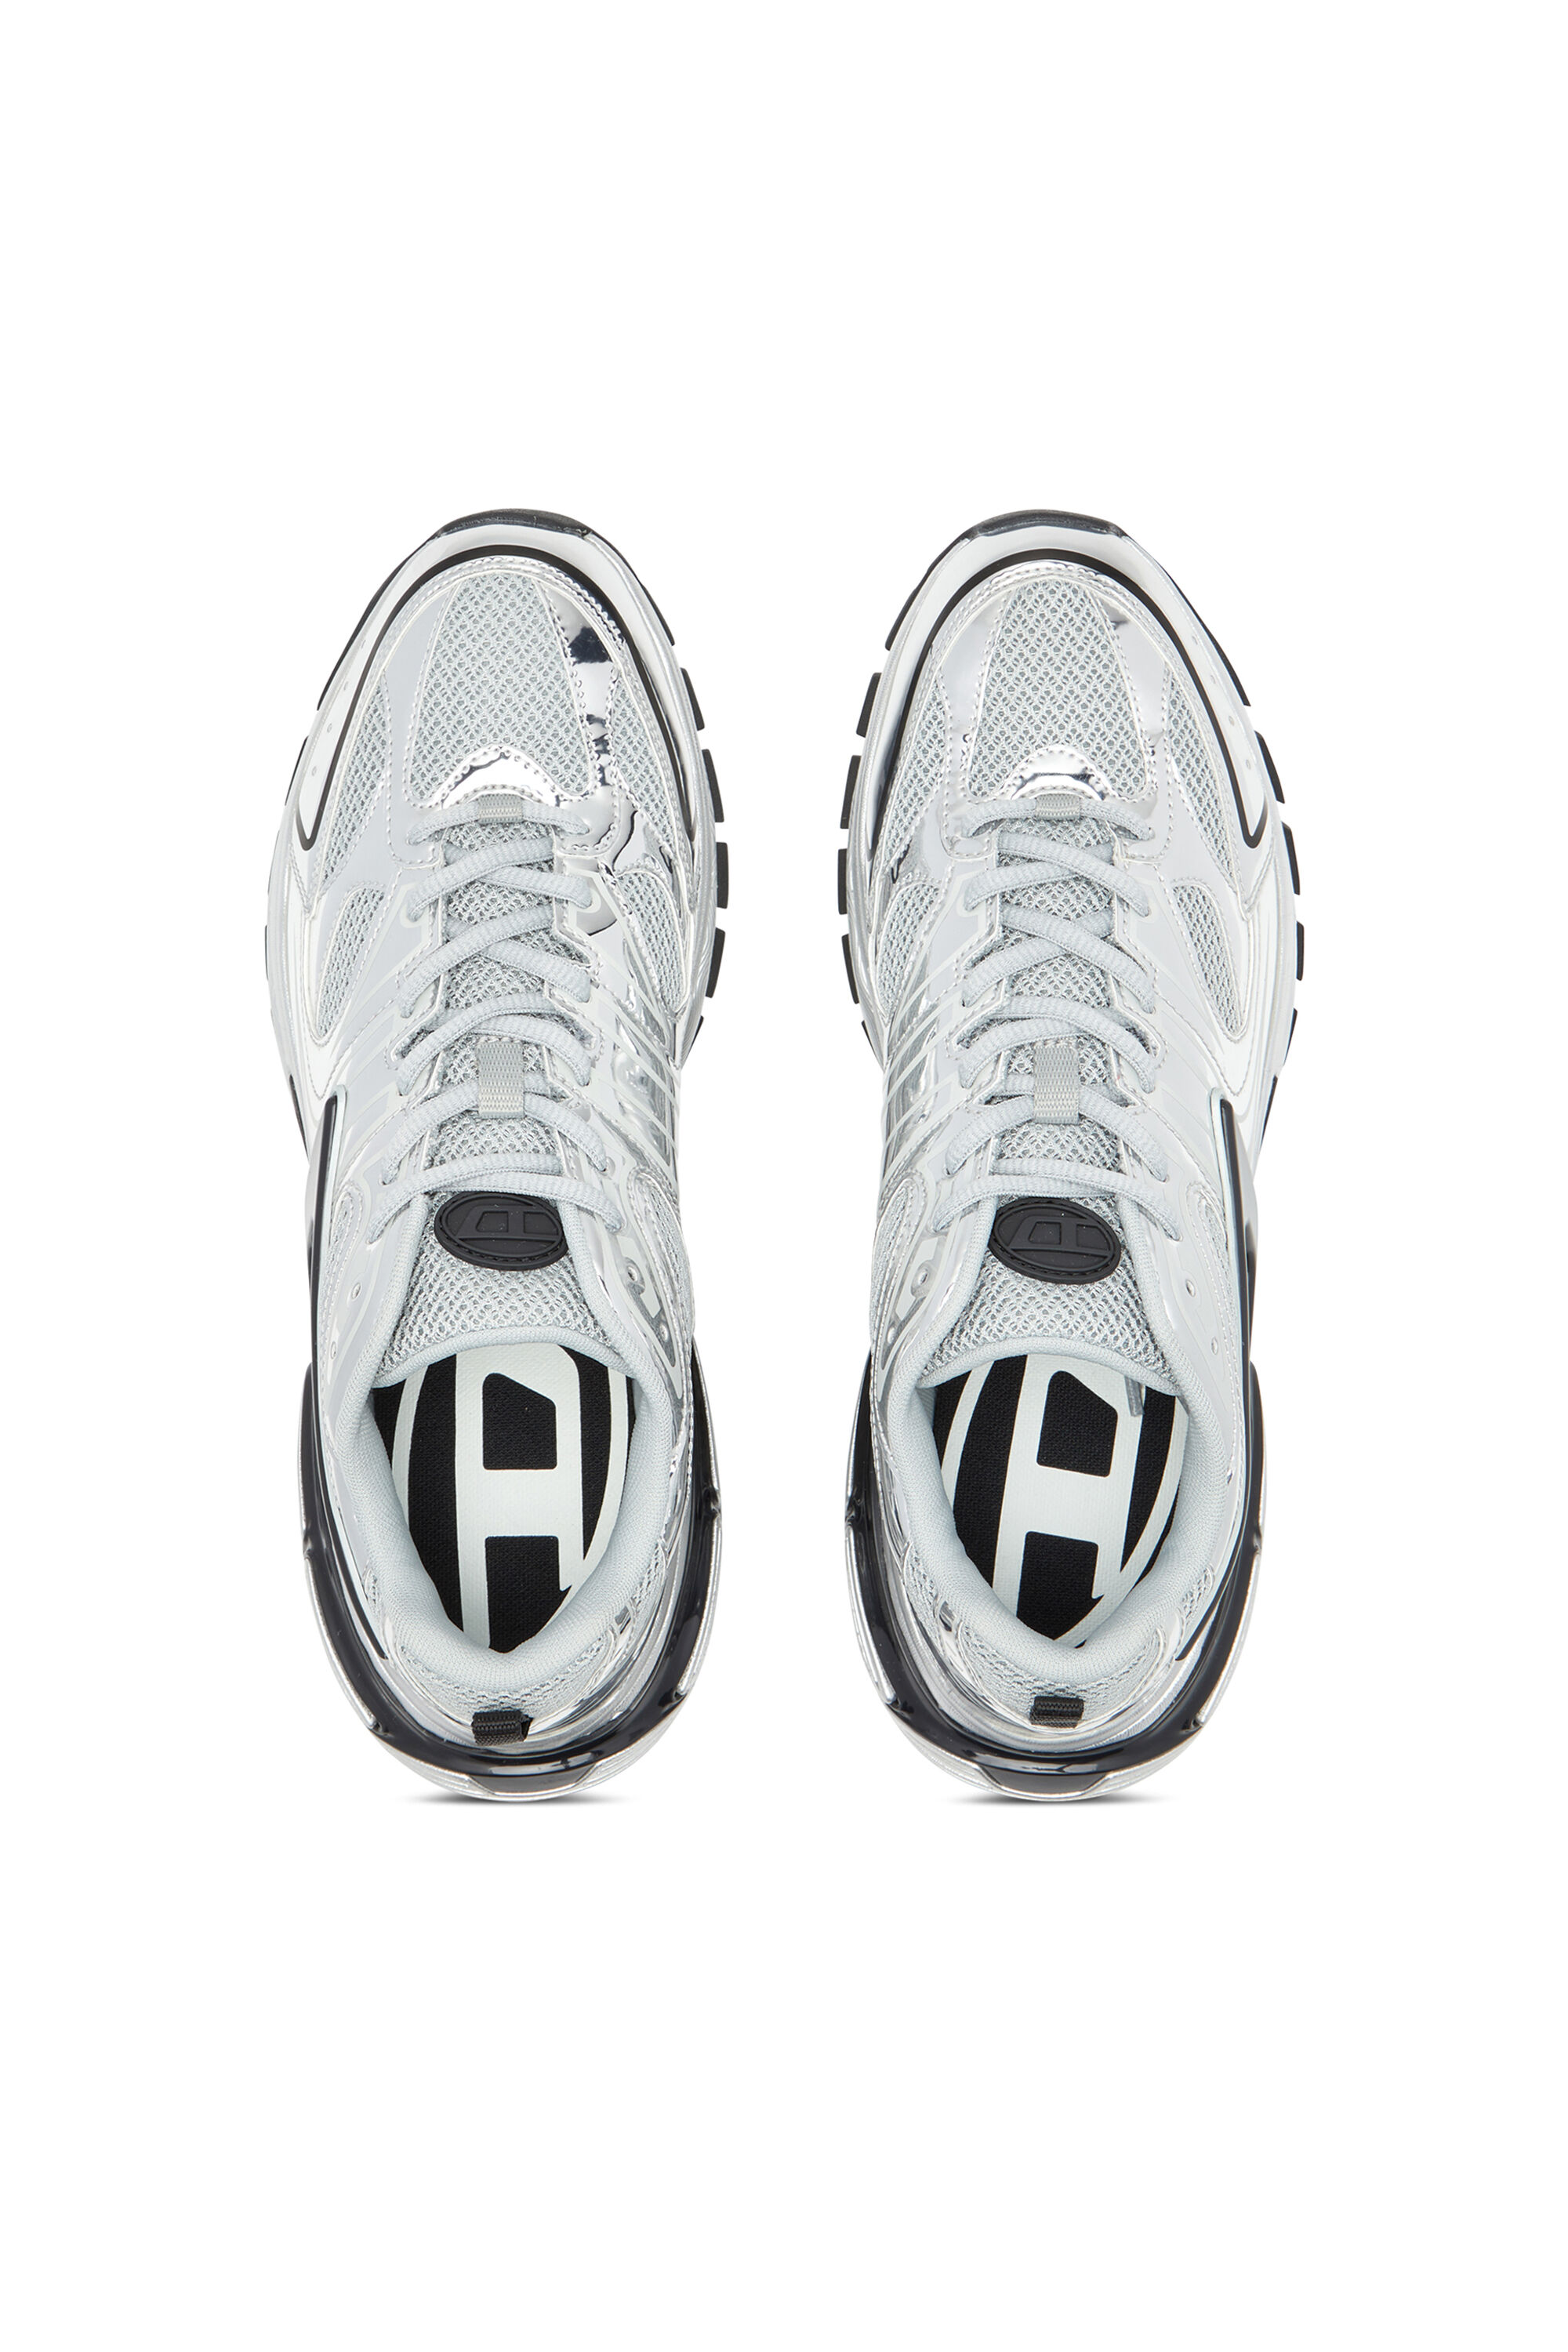 Diesel - S-SERENDIPITY PRO-X1, Herren S-Serendipity-Sneakers aus Mesh mit Metallic-Overlays in Bunt - Image 4